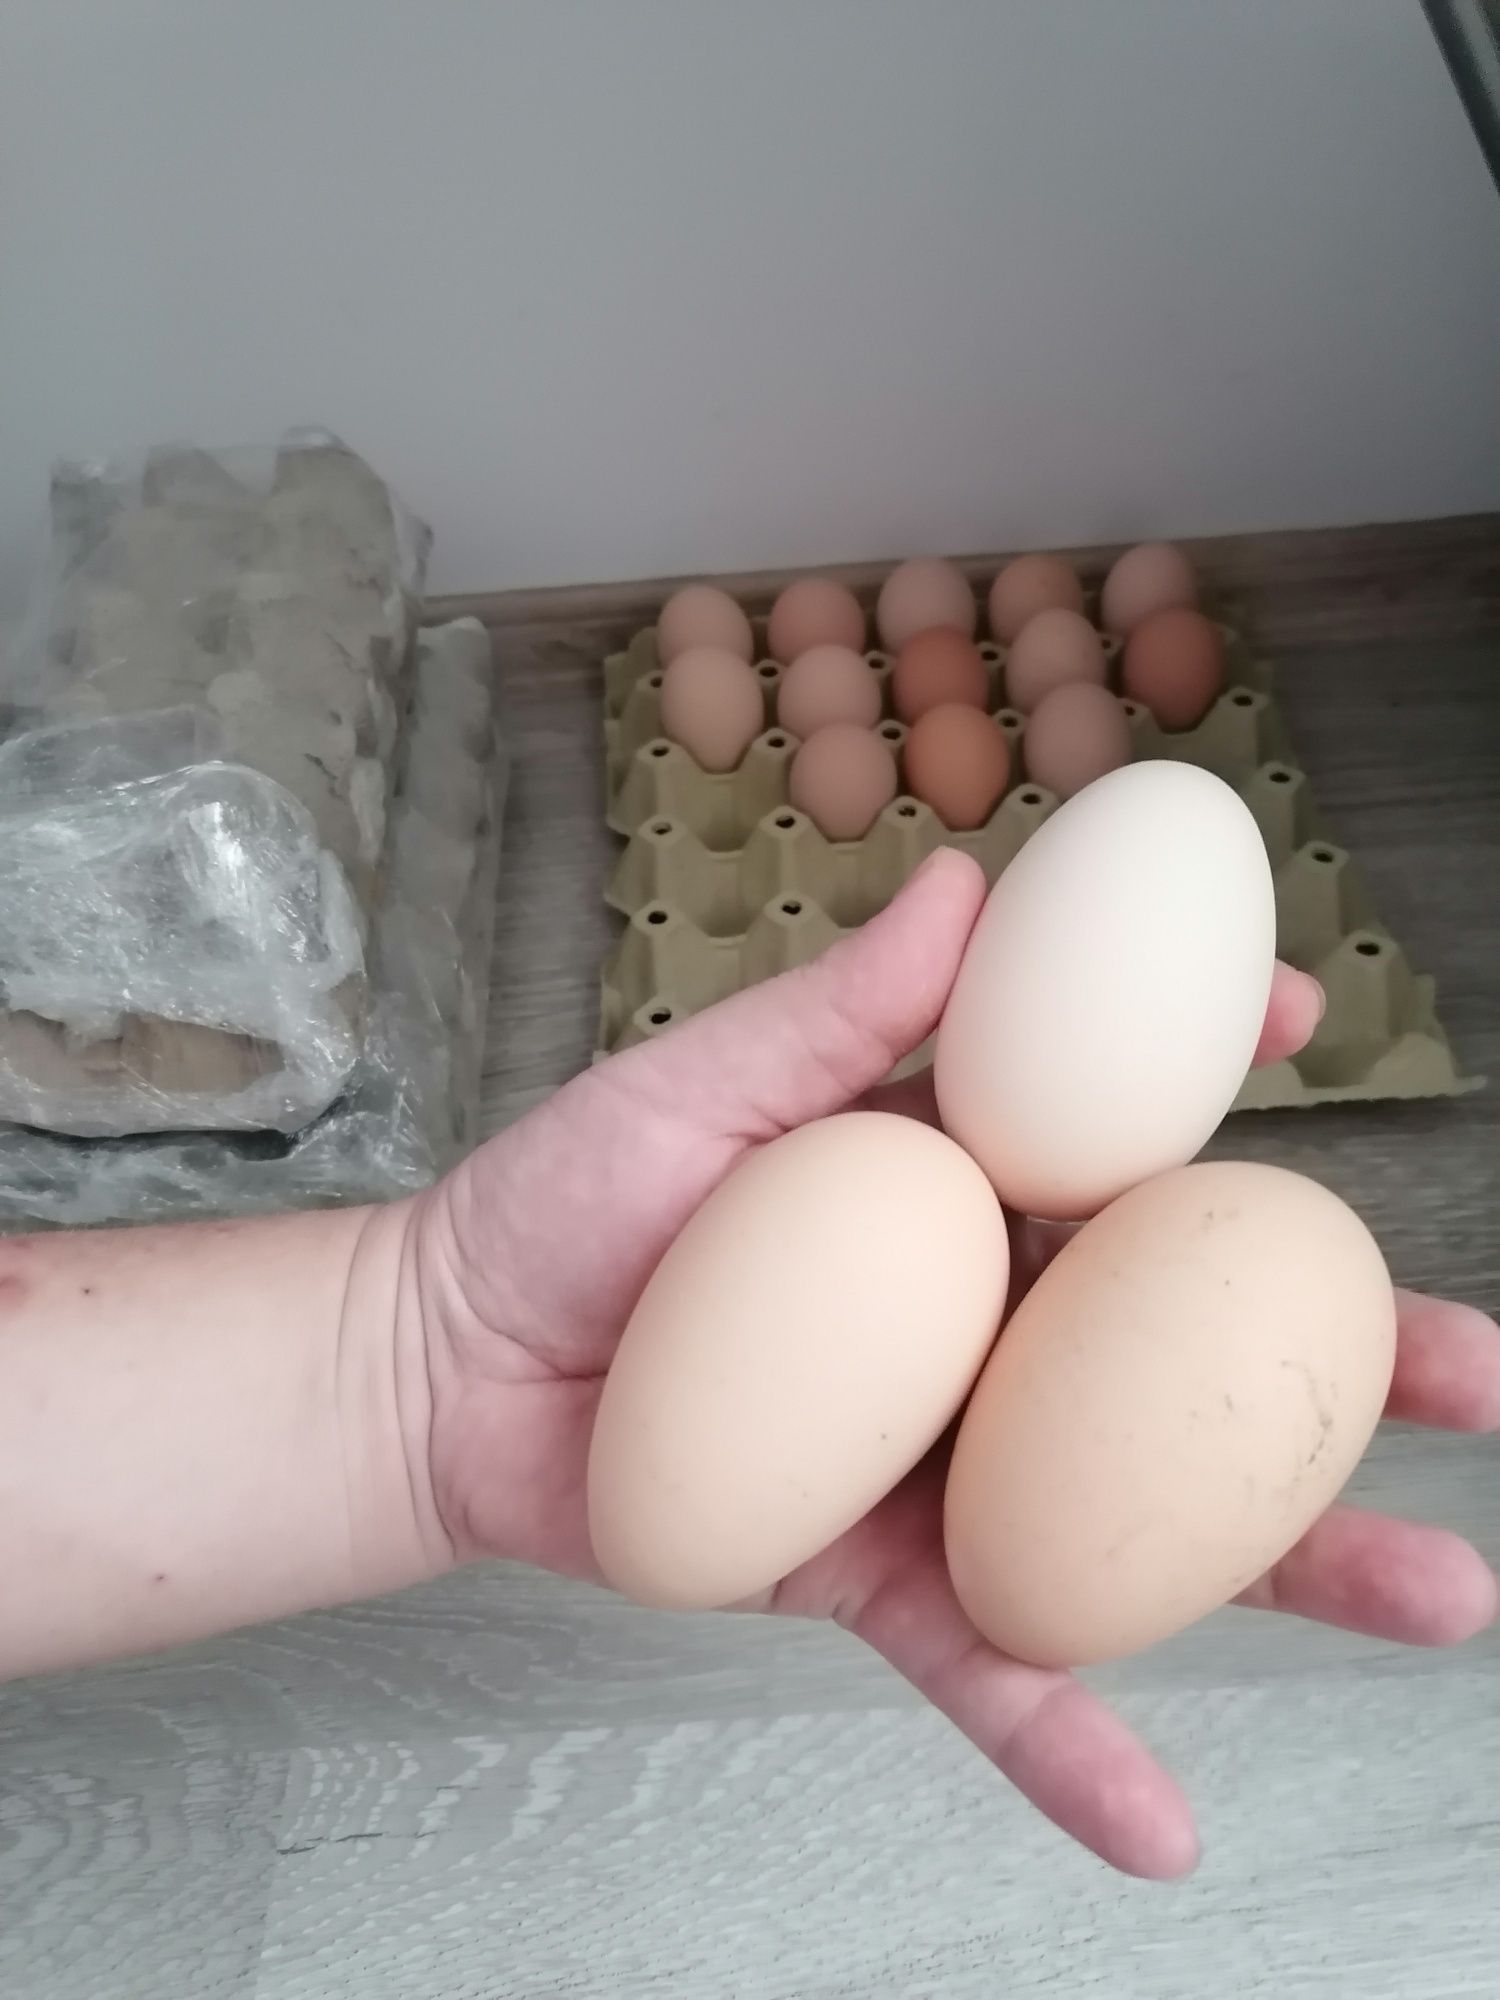 Яйца за люпене от породисти Кокошки, възможно и пиленца!